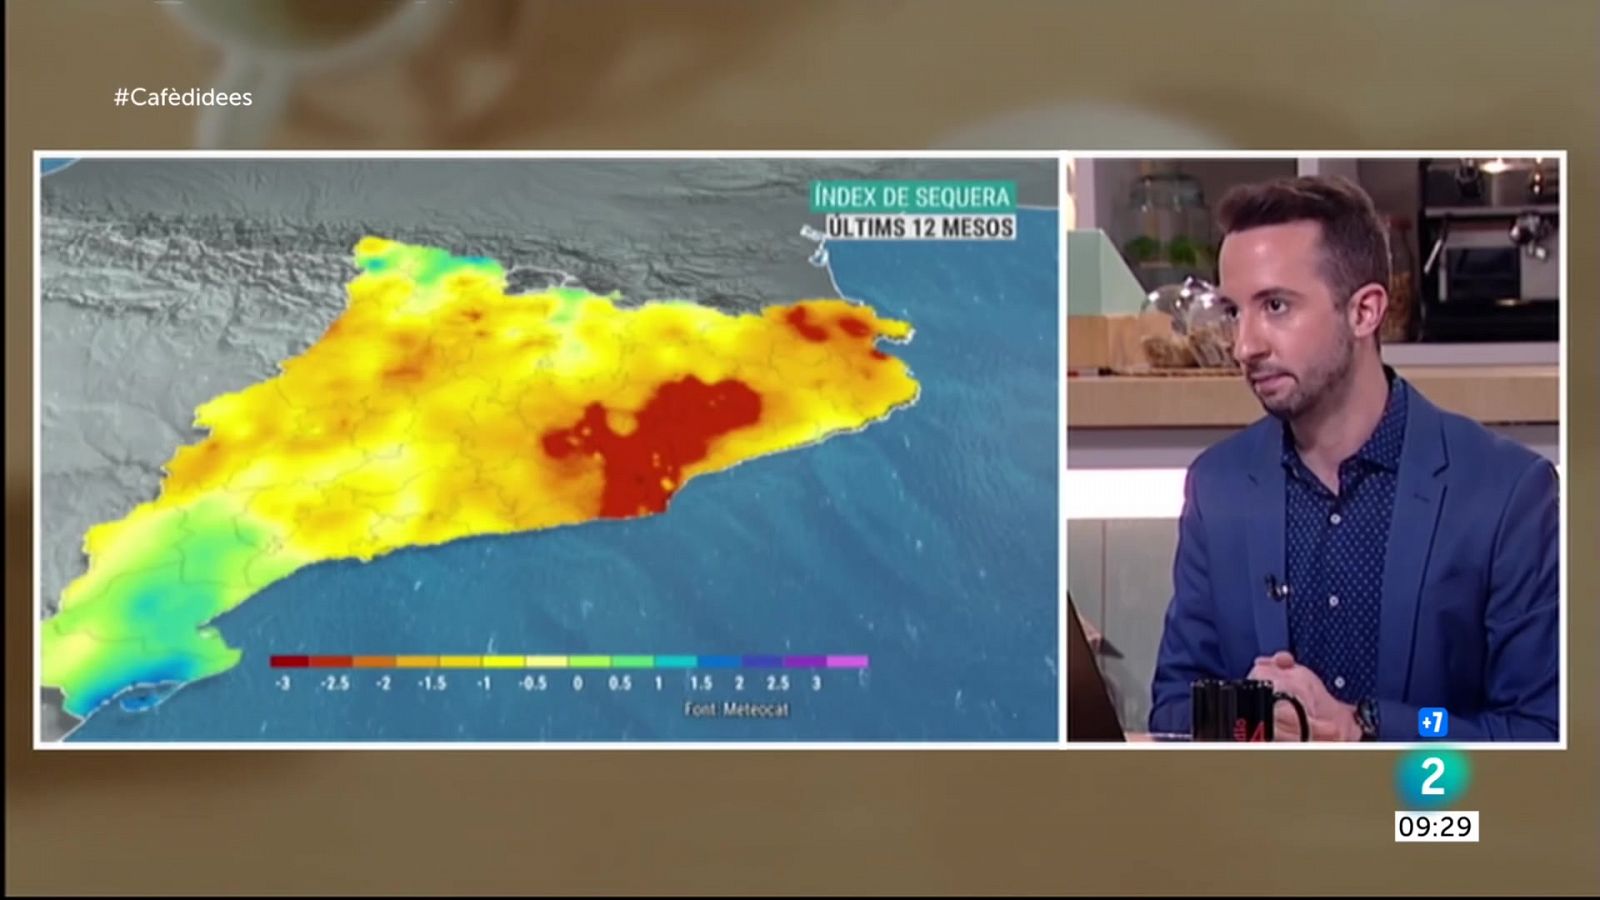 Fa dies que no plou i la sequera comença a ser preocupant en àmplies zones de Catalunya. La ratxa seca ja arriba als 75 dies a sectors del Prepirineu, Catalunya Central, prelitoral i Tarragonès.